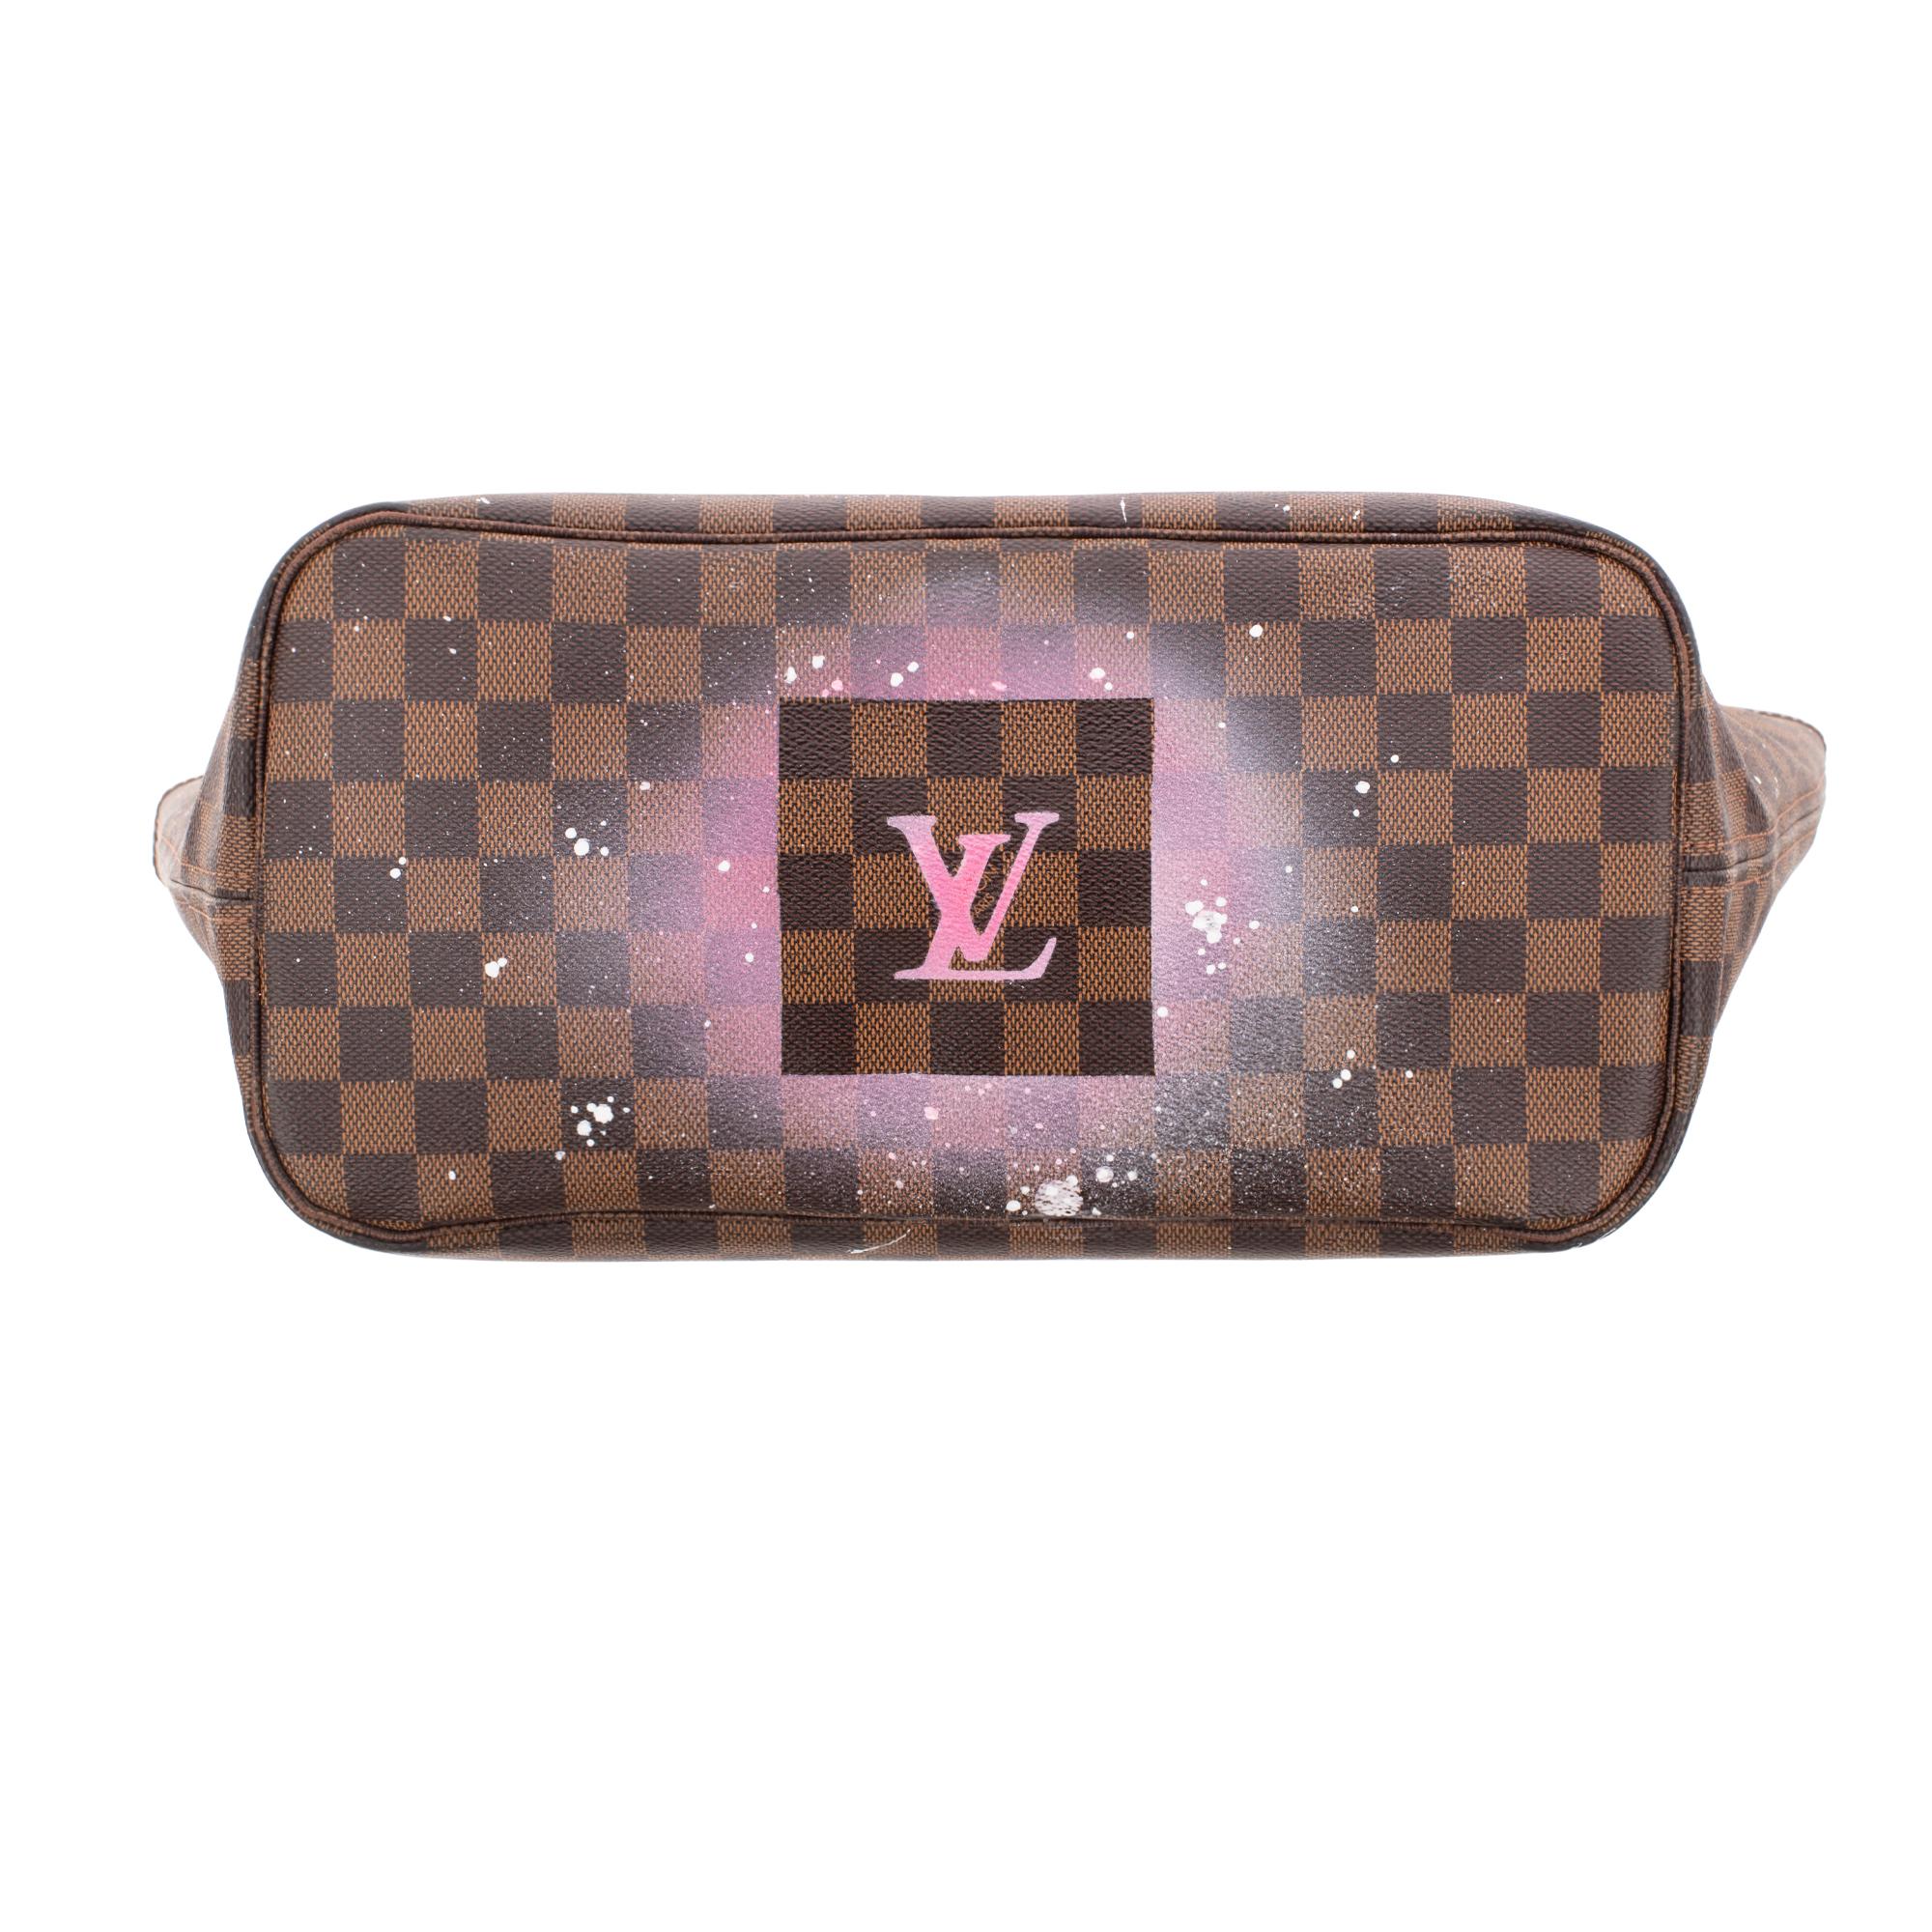 Amazing LV Neverfull MM handbag customized 